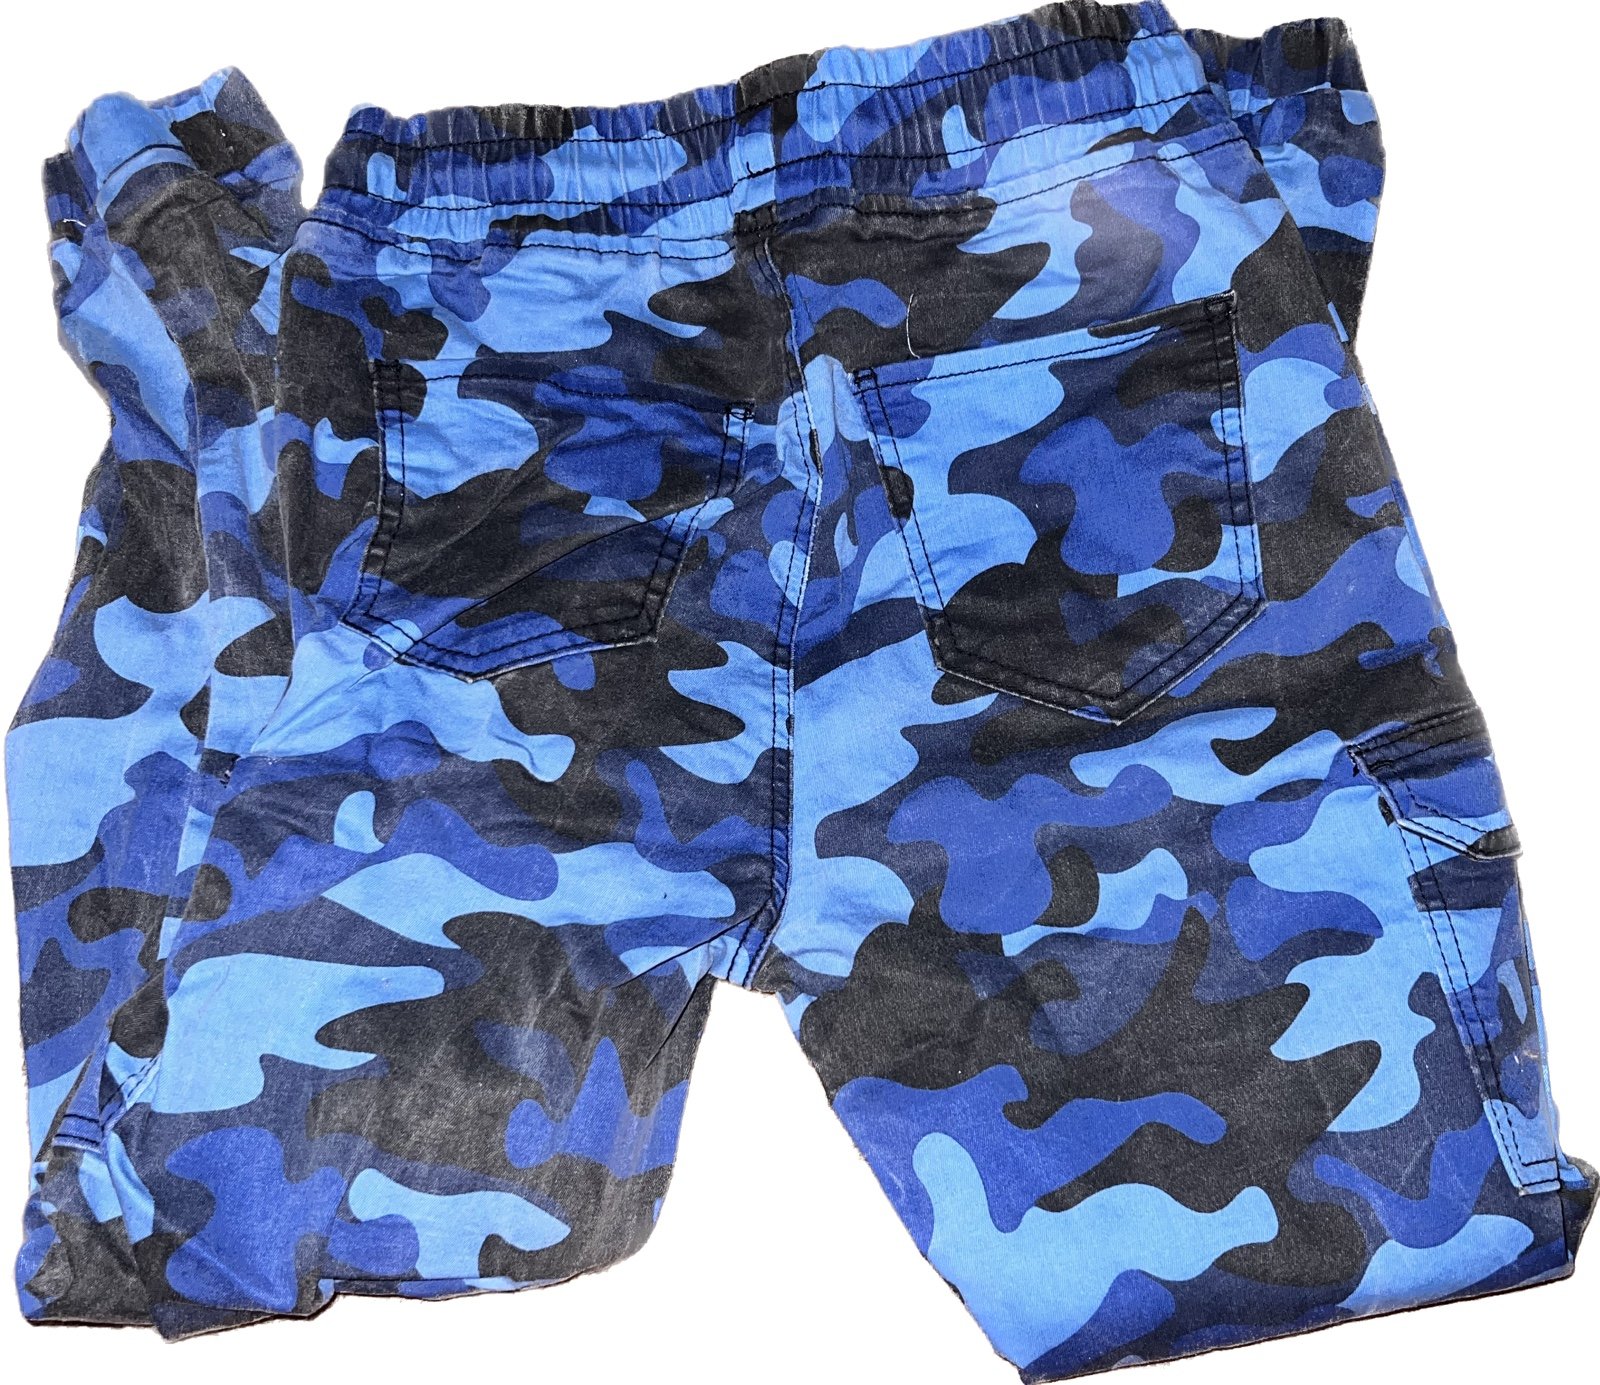 High quality blu camo cargo pants iRm3MWbZy US Sale